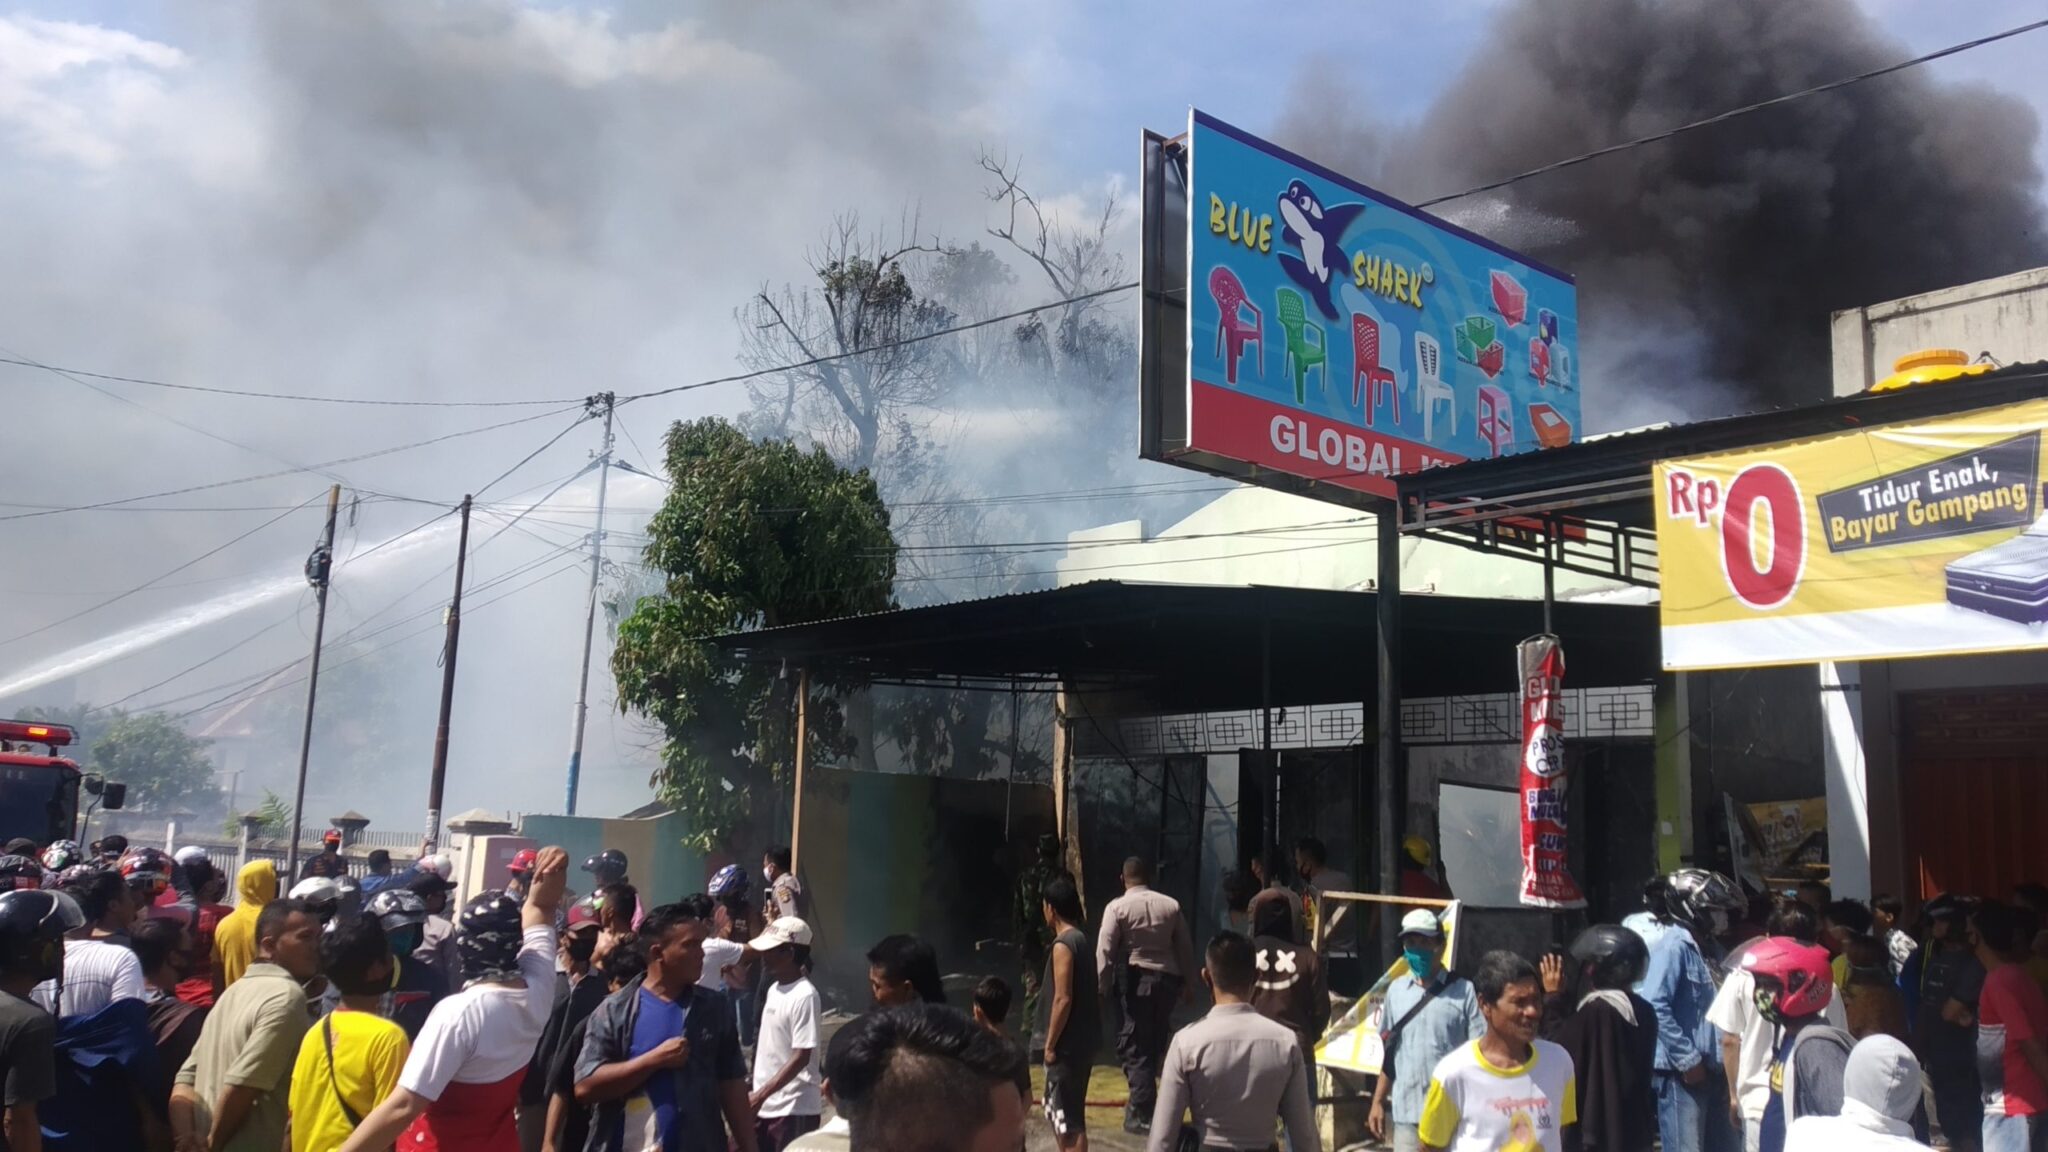 Kebakaran Toko Global Gorontalo